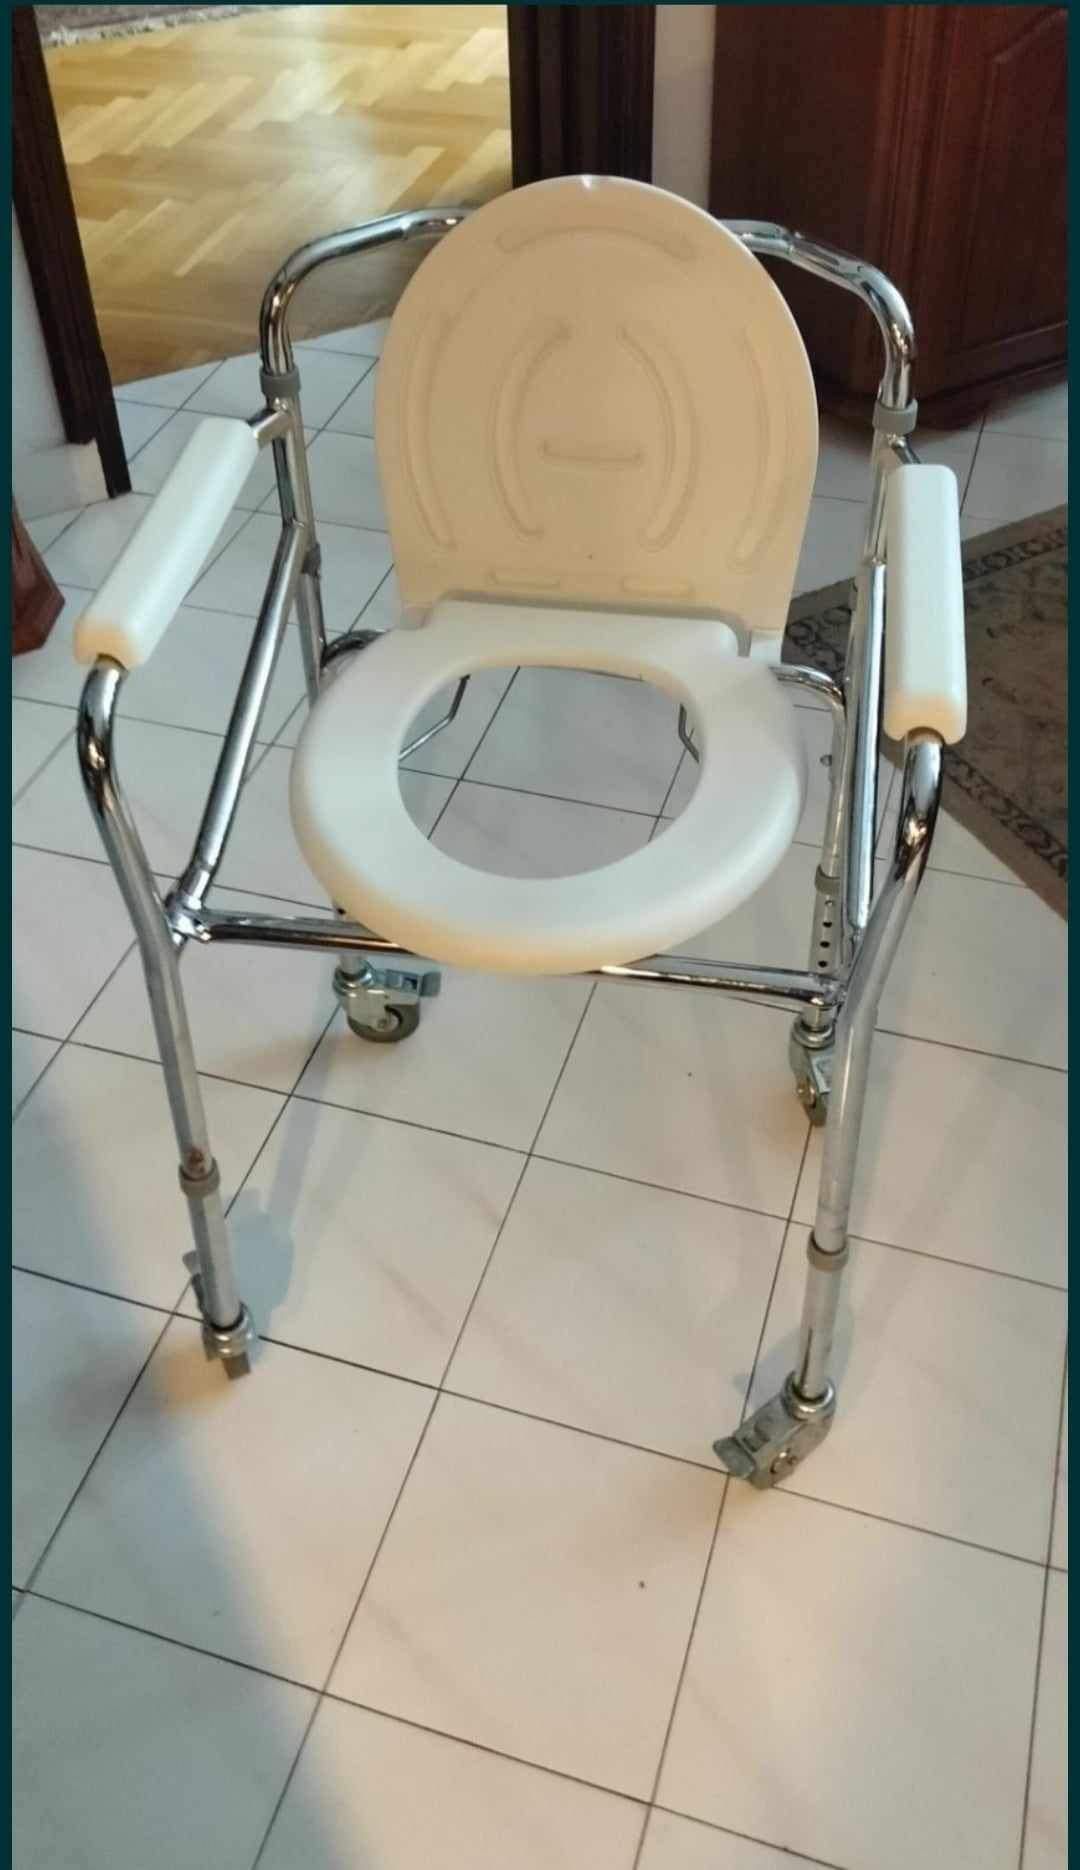 Wózek inwalidzki toaletowy